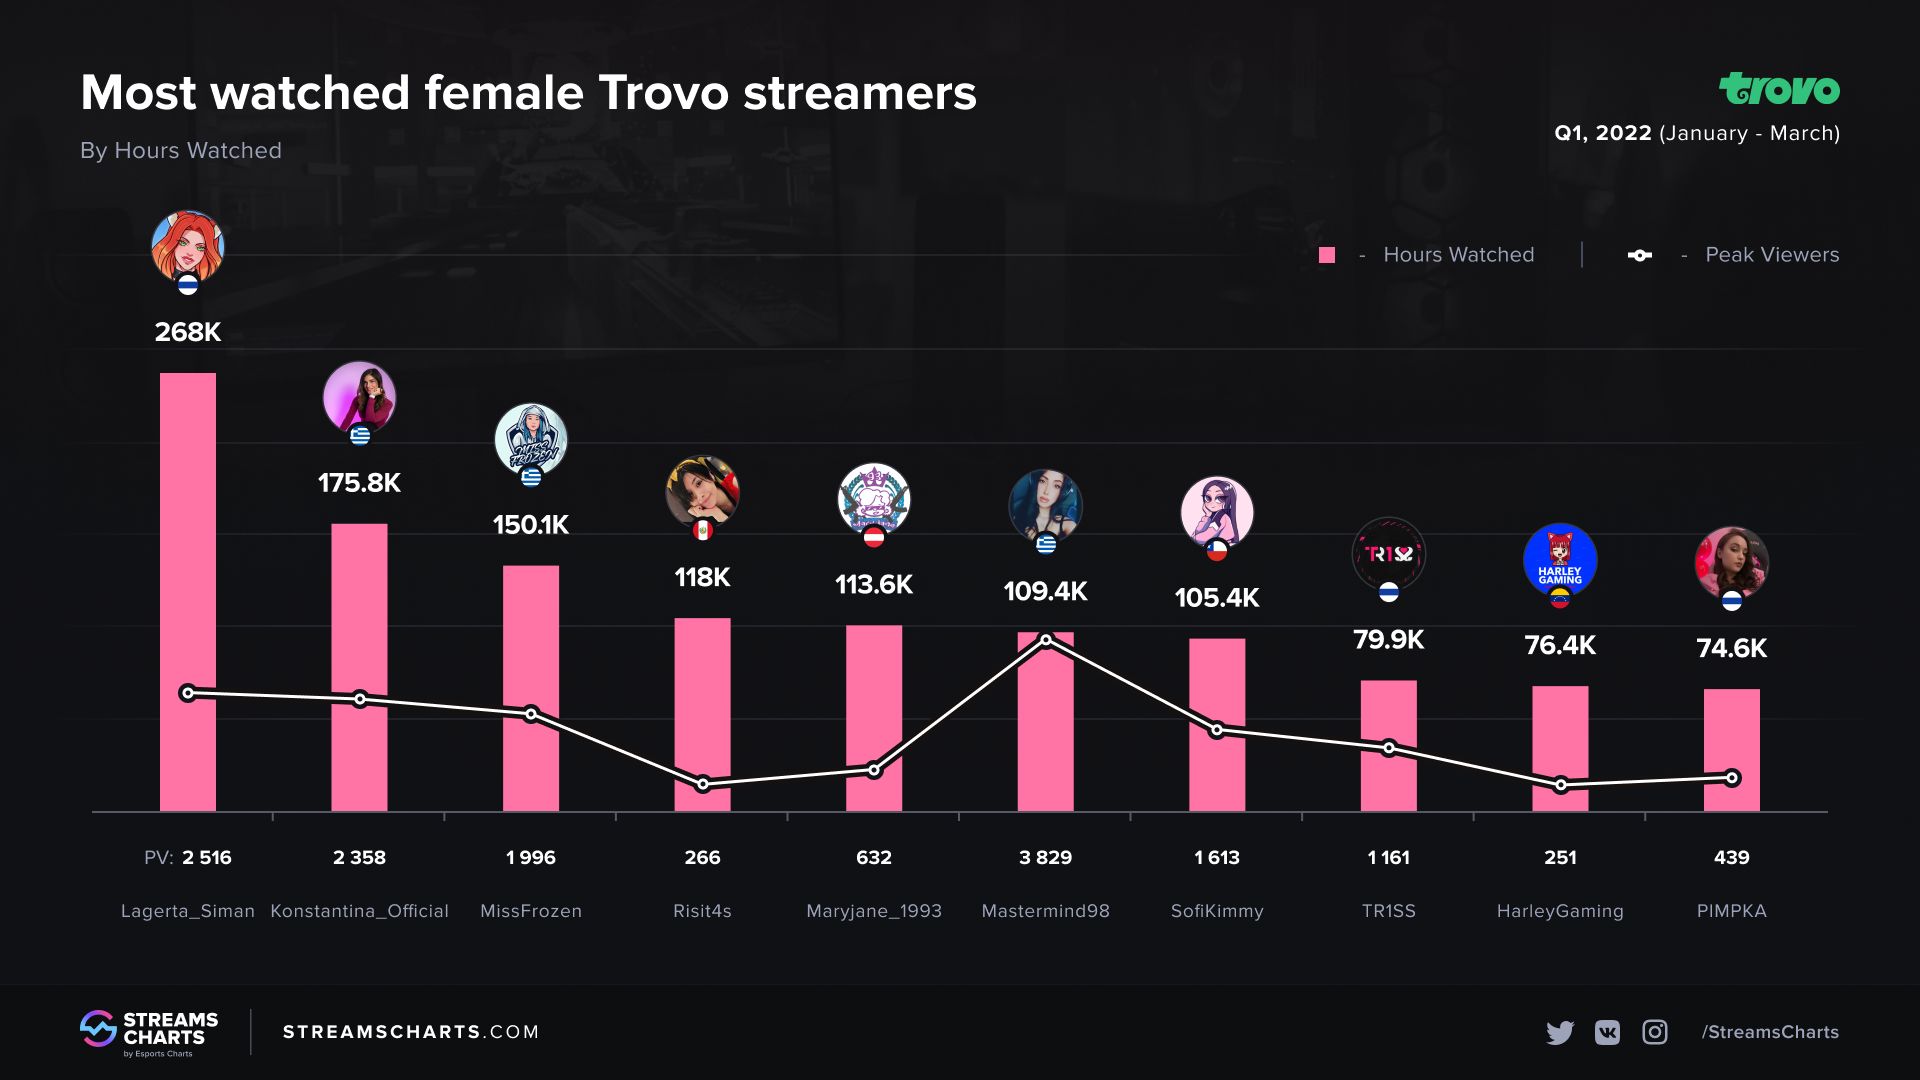 Топ-10 девушек-стримеров по количеству часов просмотра на Trovo | Источник: Streams Charts